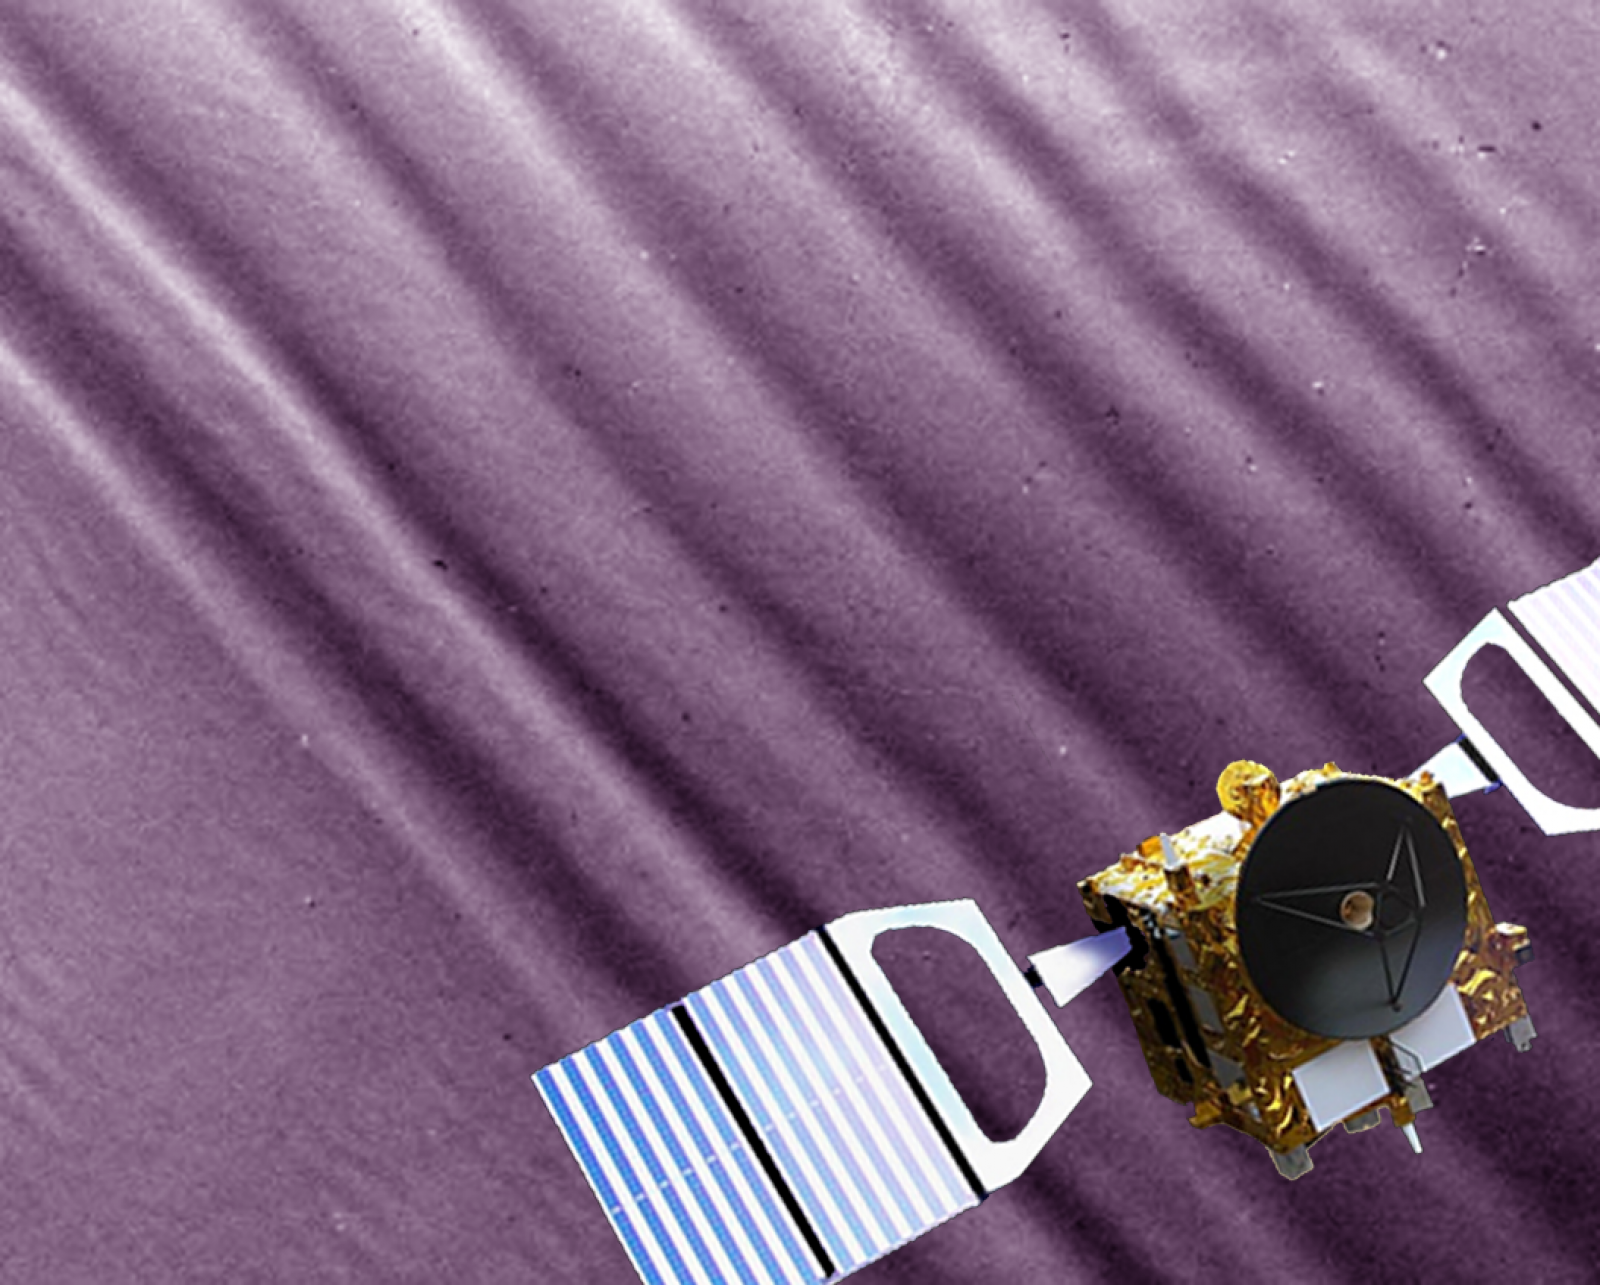 La sonda Venus Express, sobre una imagen real de las ondas atmosféricas de Venus